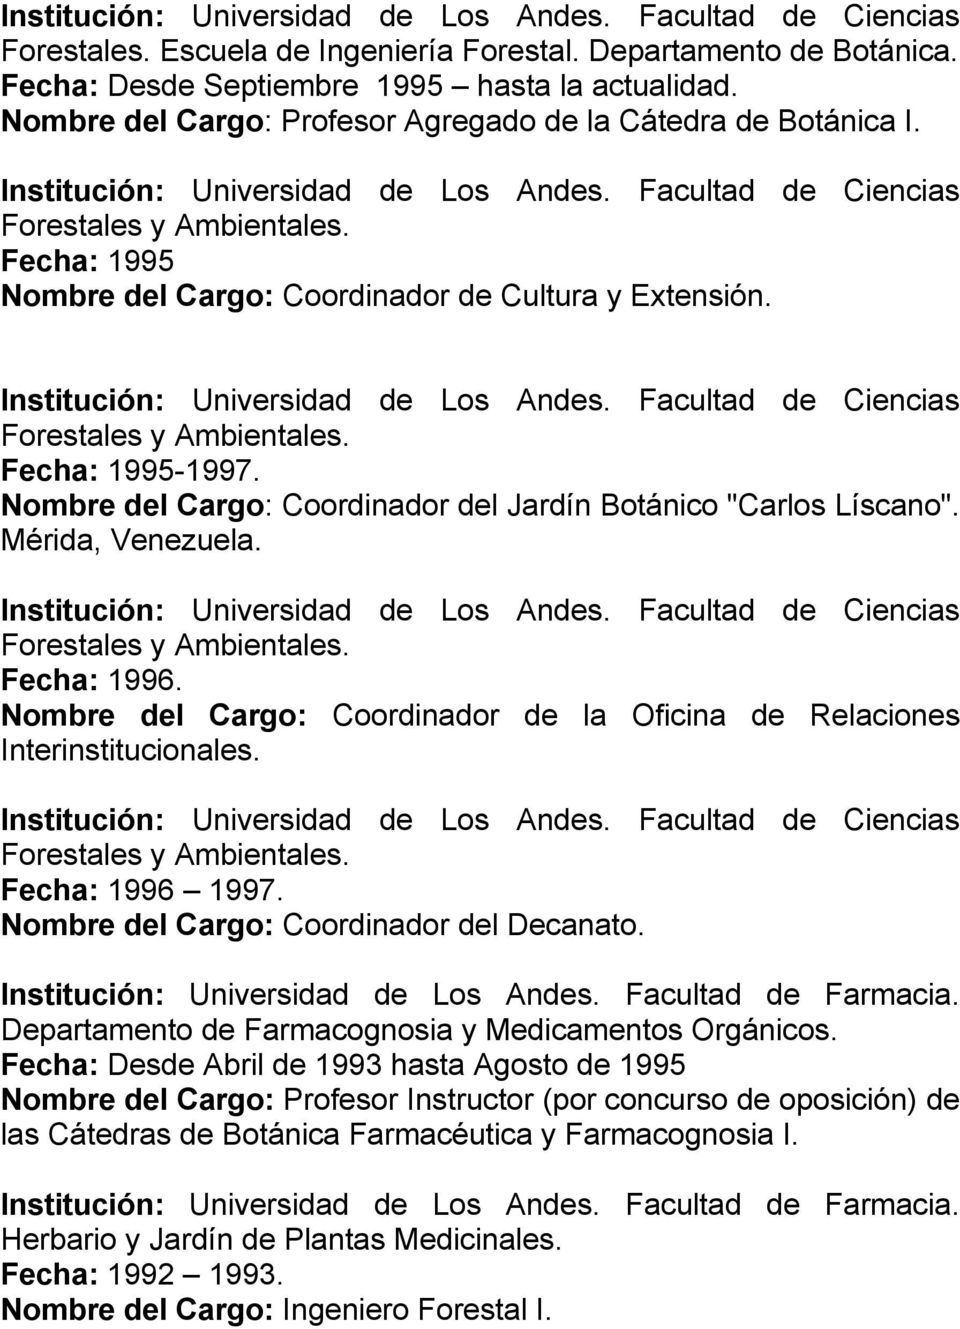 Fecha: 1995 Nombre del Cargo: Coordinador de Cultura y Extensión. Institución: Universidad de Los Andes. Facultad de Ciencias Forestales y Ambientales. Fecha: 1995-1997.